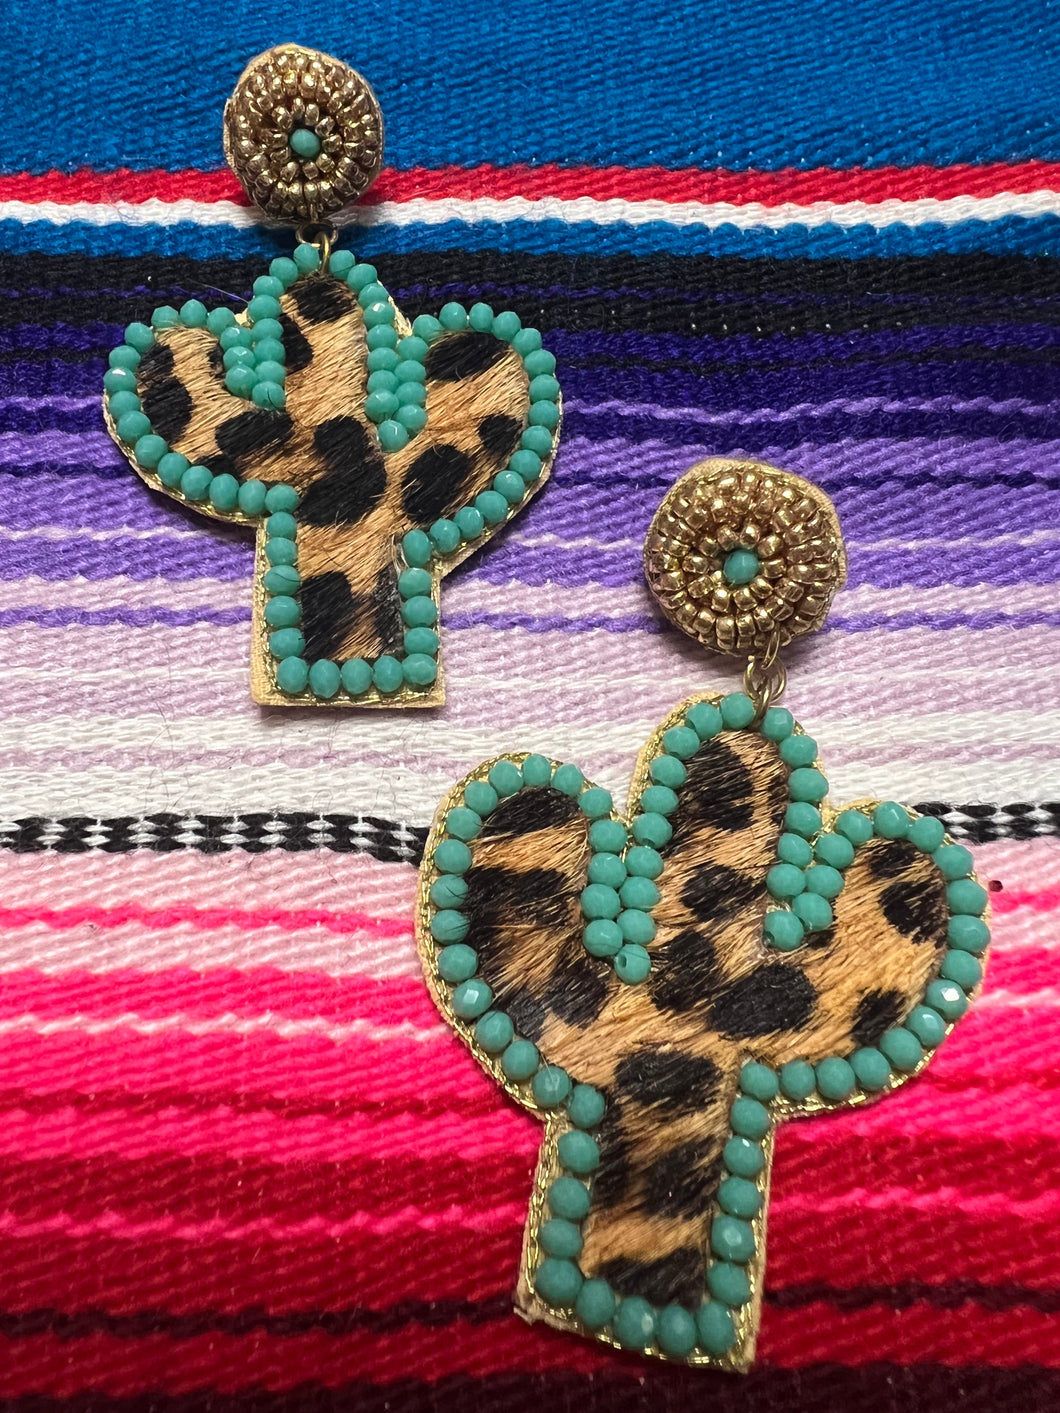 Rodeo cactus